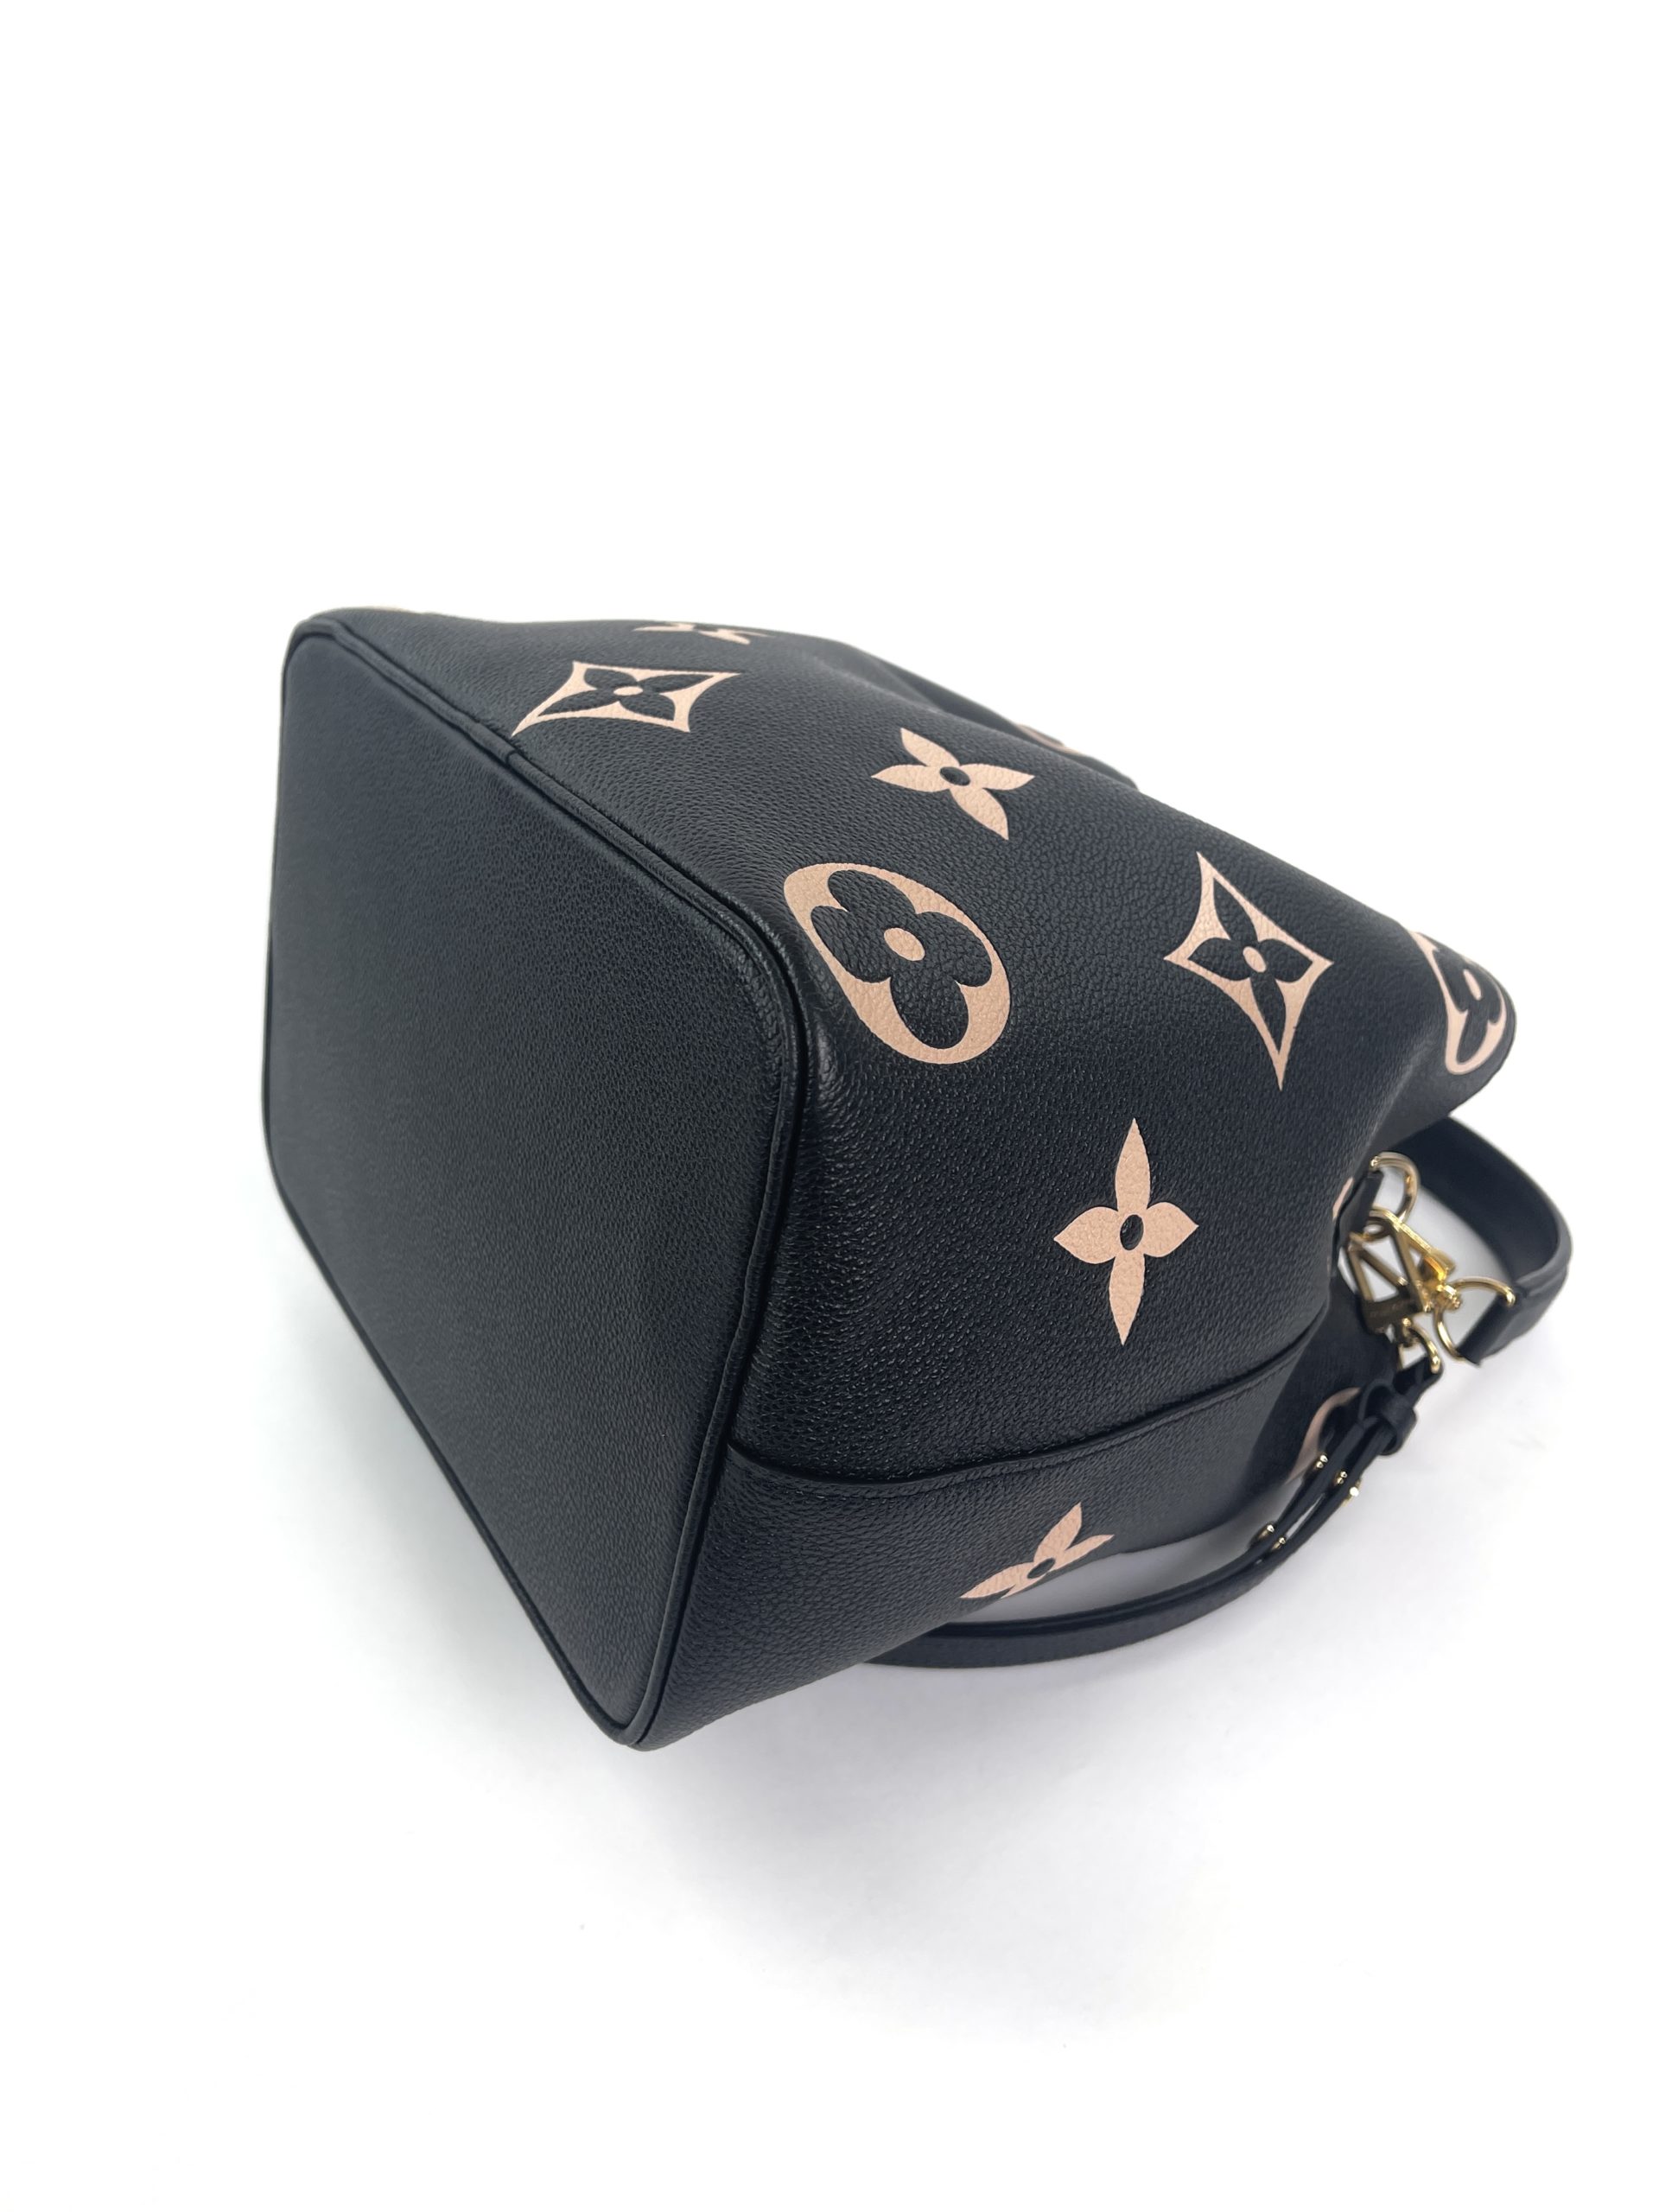 The Beautiful Neo Noe Club~  Louis vuitton bags prices, Black louis vuitton  bag, Chanel bag prices